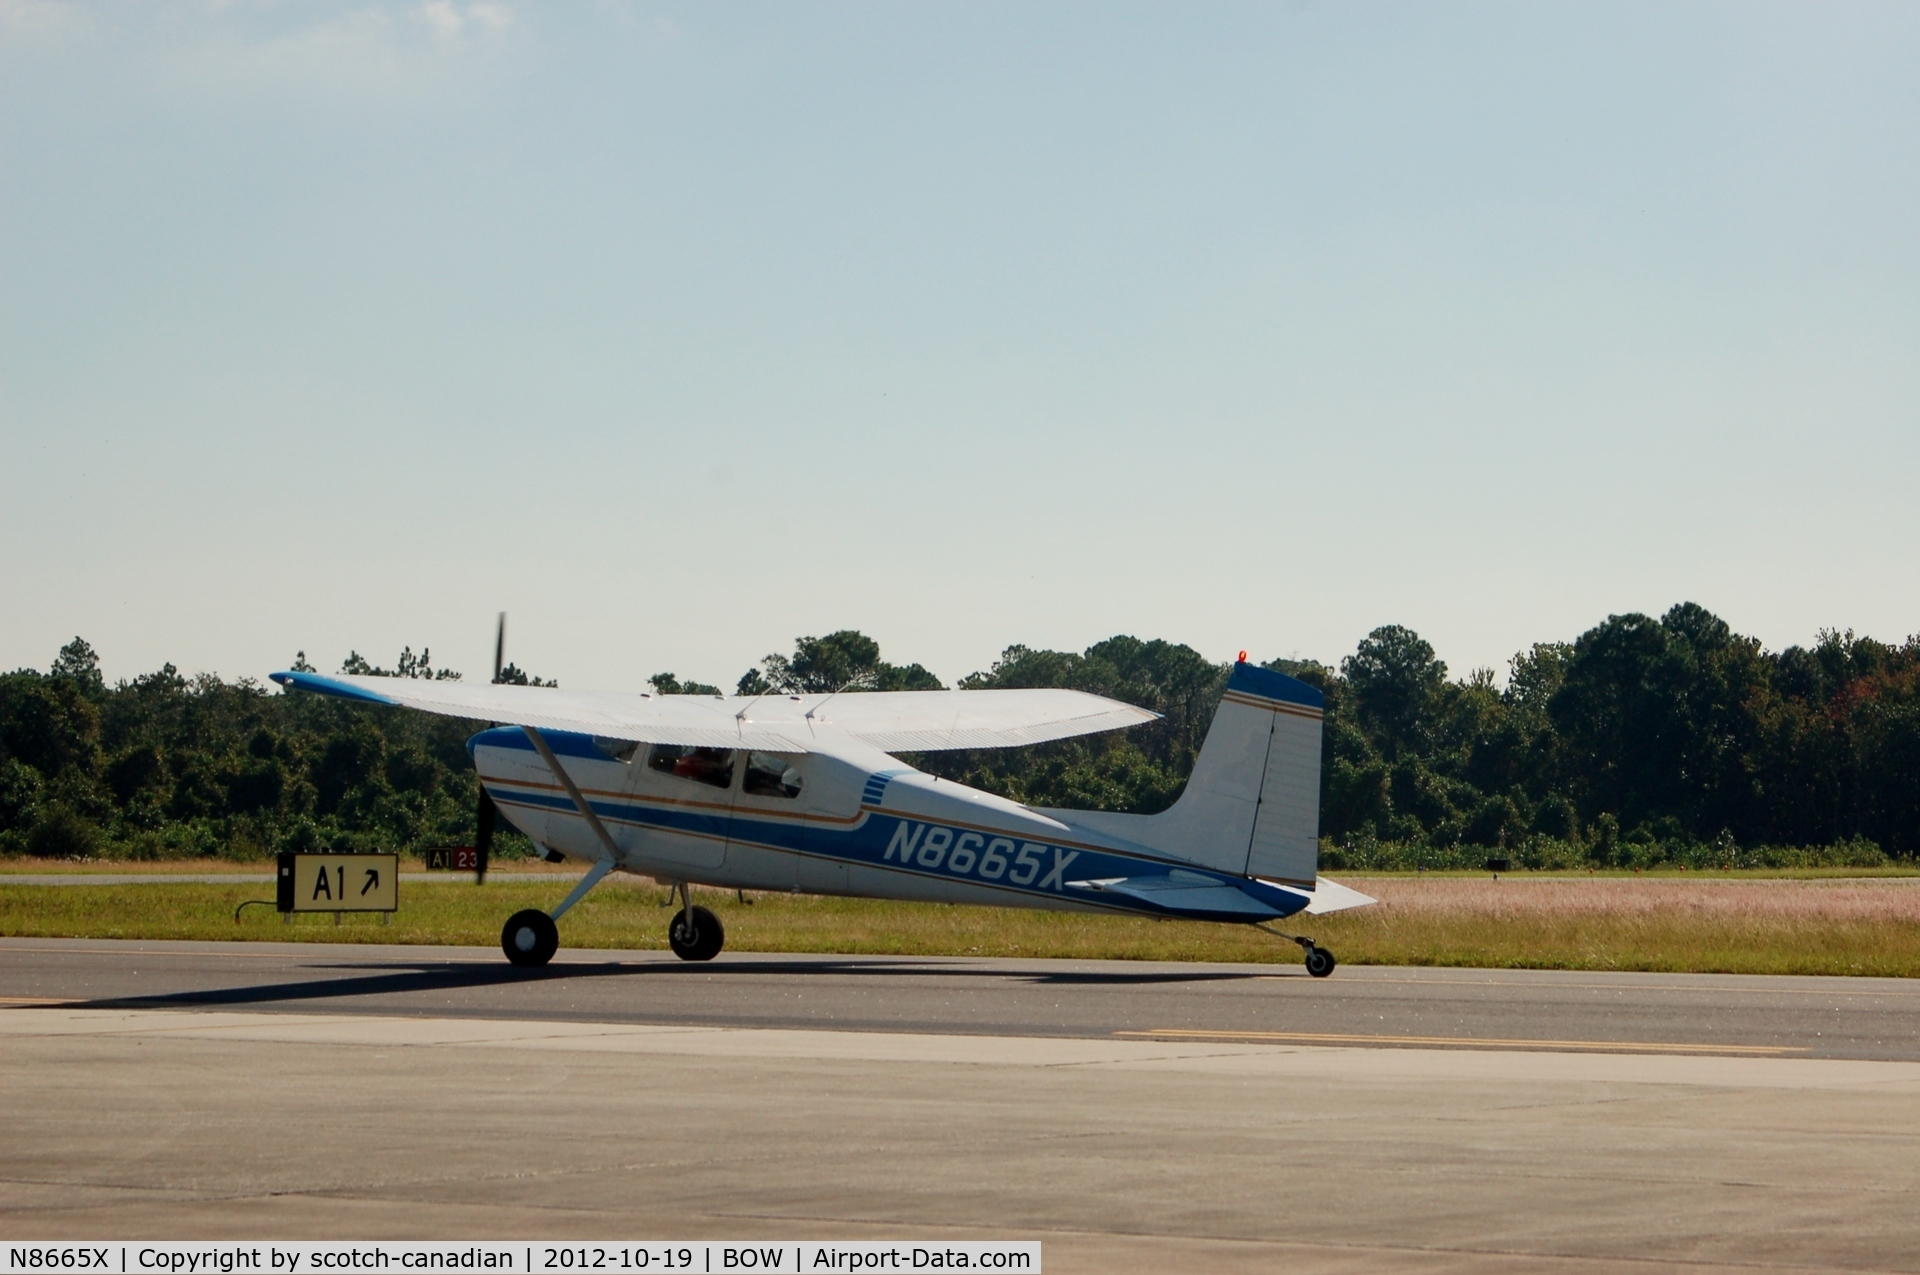 N8665X, 1961 Cessna 180E C/N 18051065, 1961 Cessna 180E N8665X at Bartow Municipal Airport, Bartow, FL